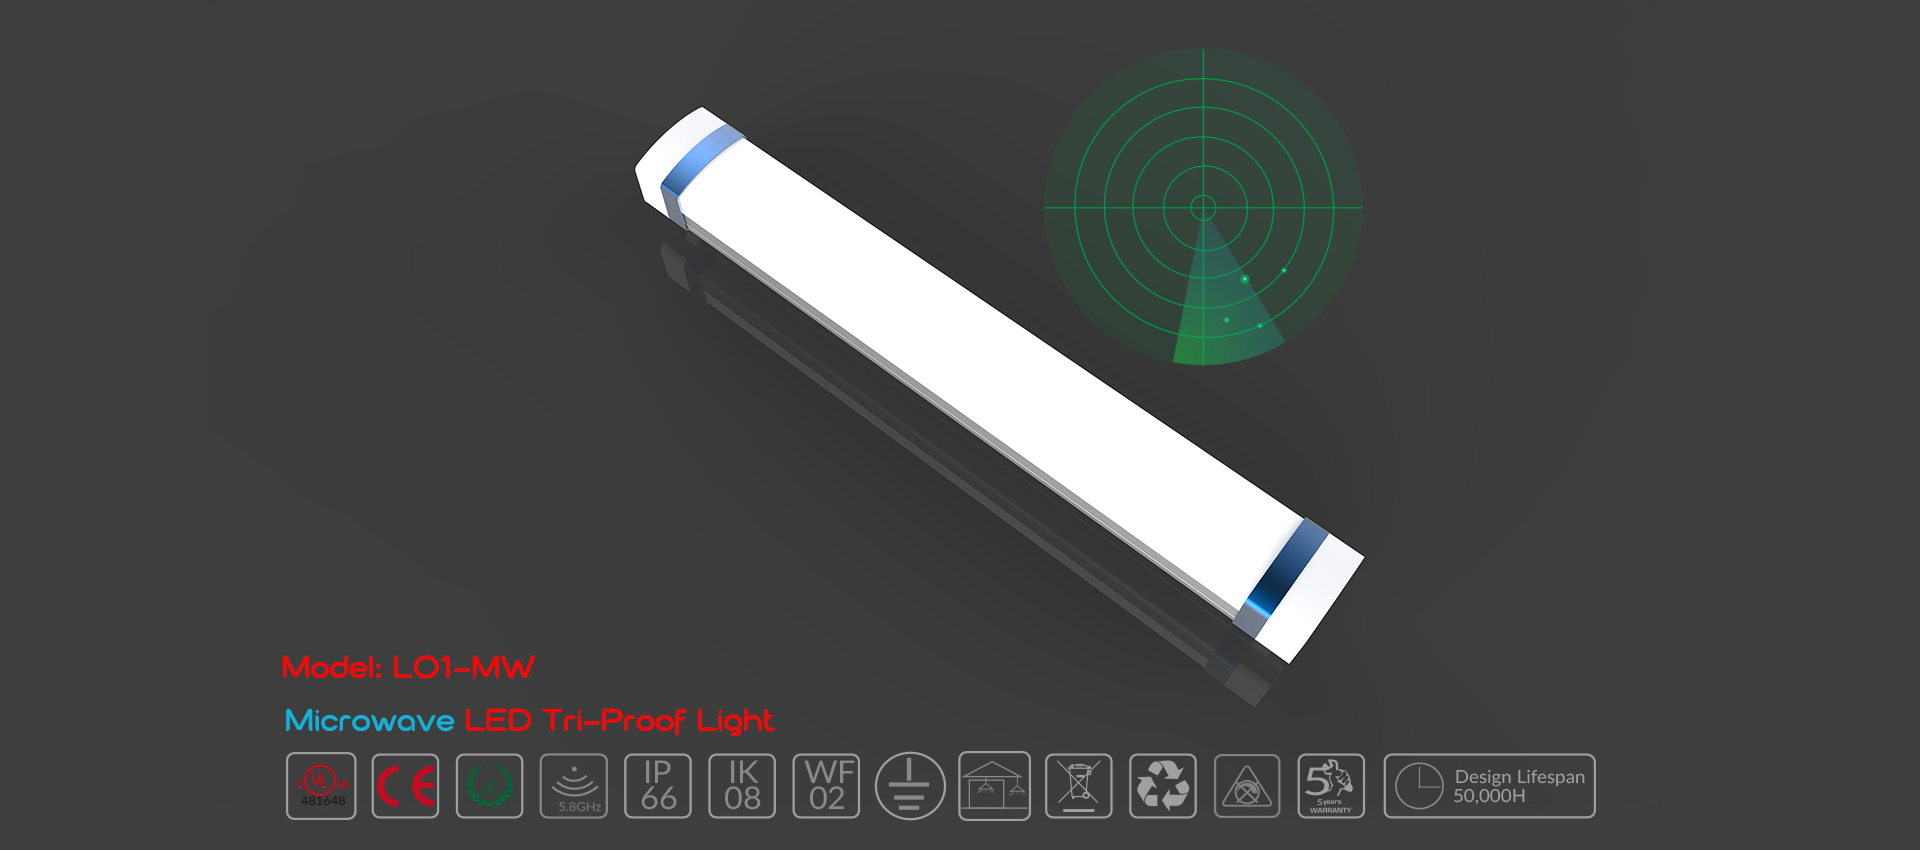 LED Tri-proof Light L01-MW